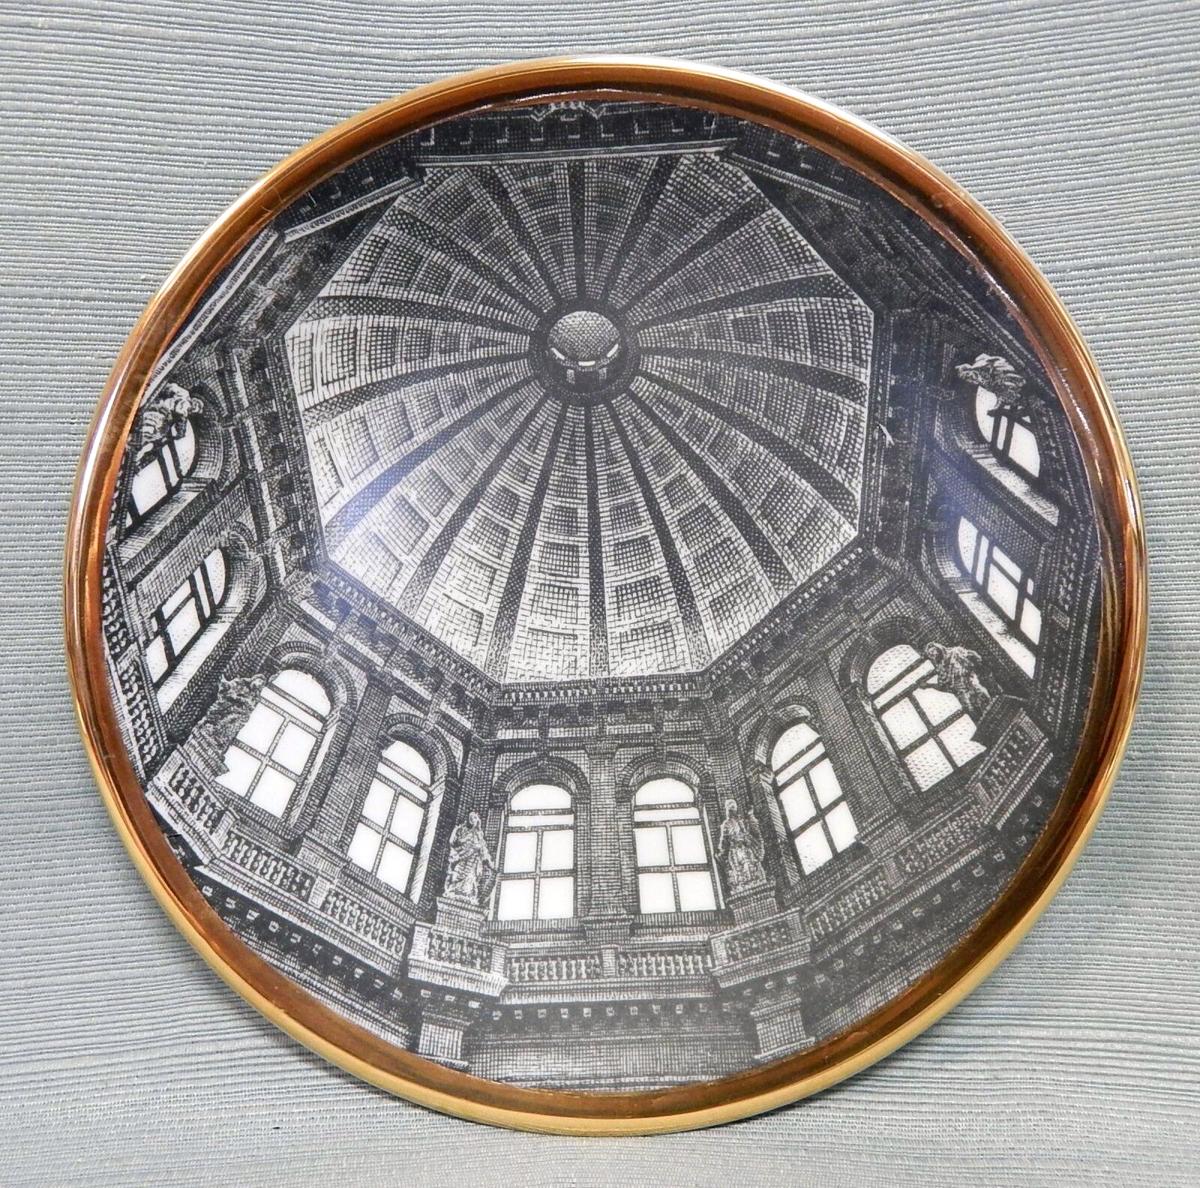 Vintage 1960s Piero Fornasetti Church Dome Porcelain Plate, Cupole d'Italia, #6,  "S. Maria della Salute a Venezia"